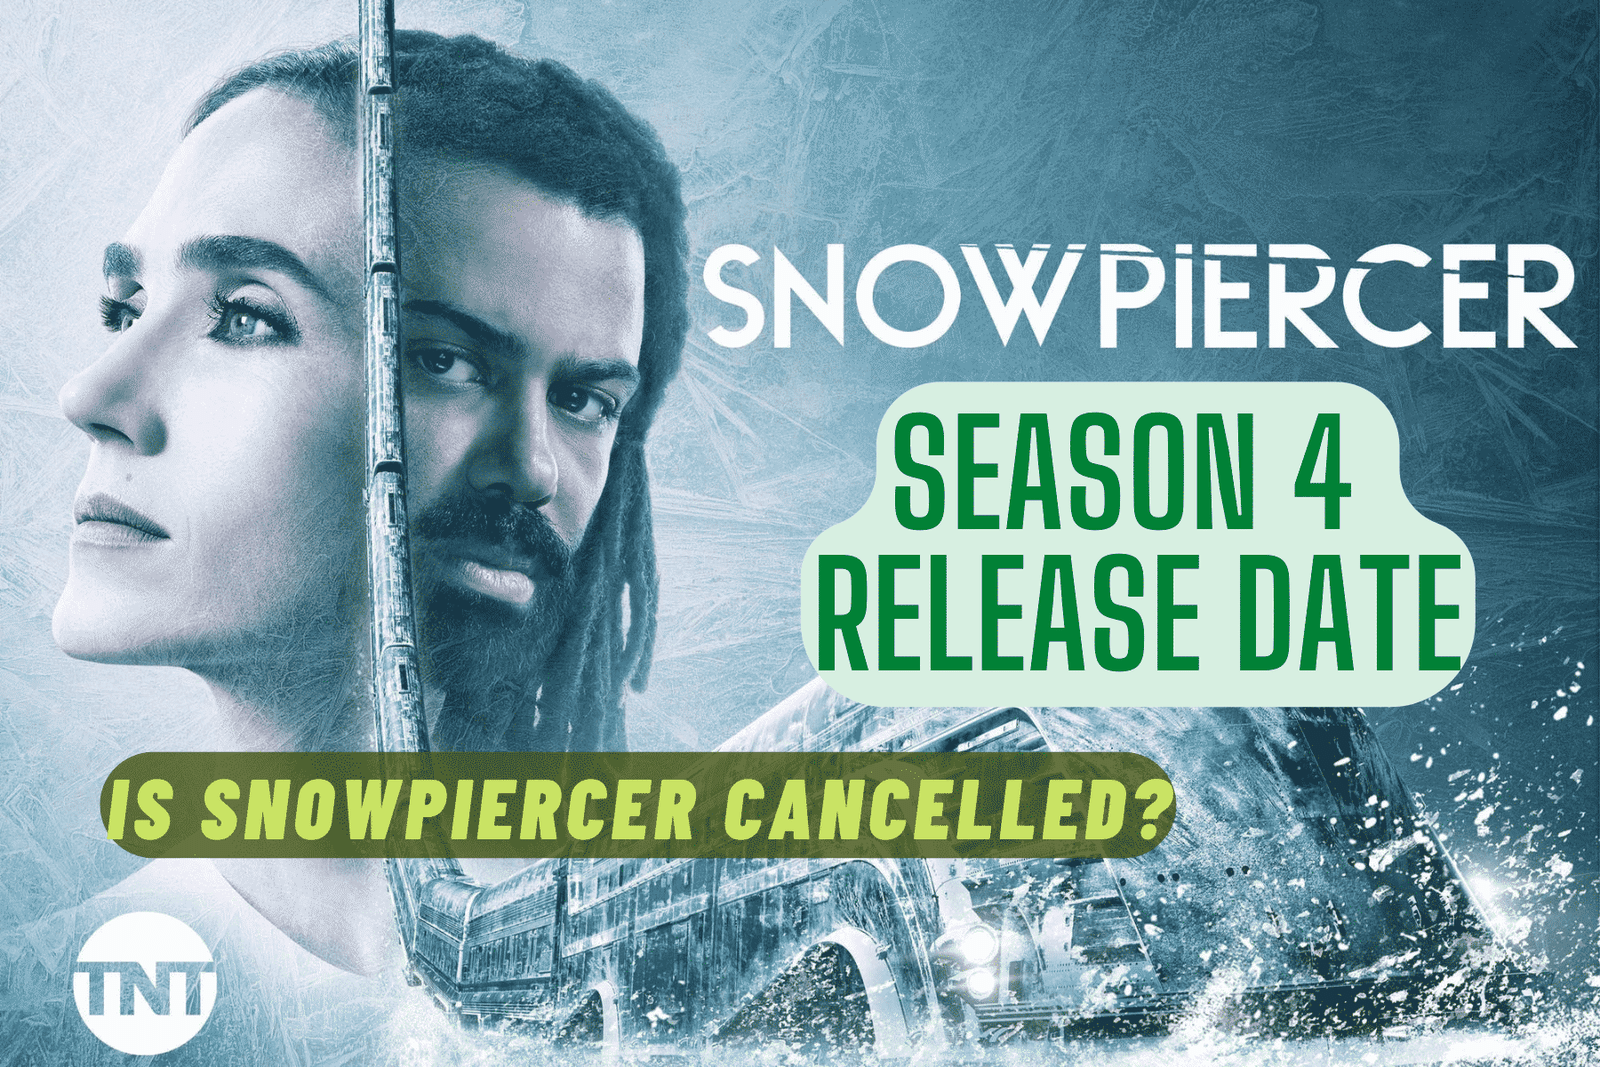 Snowpiercer Season 4 Release Date, Trailer - Is it Cancelled?